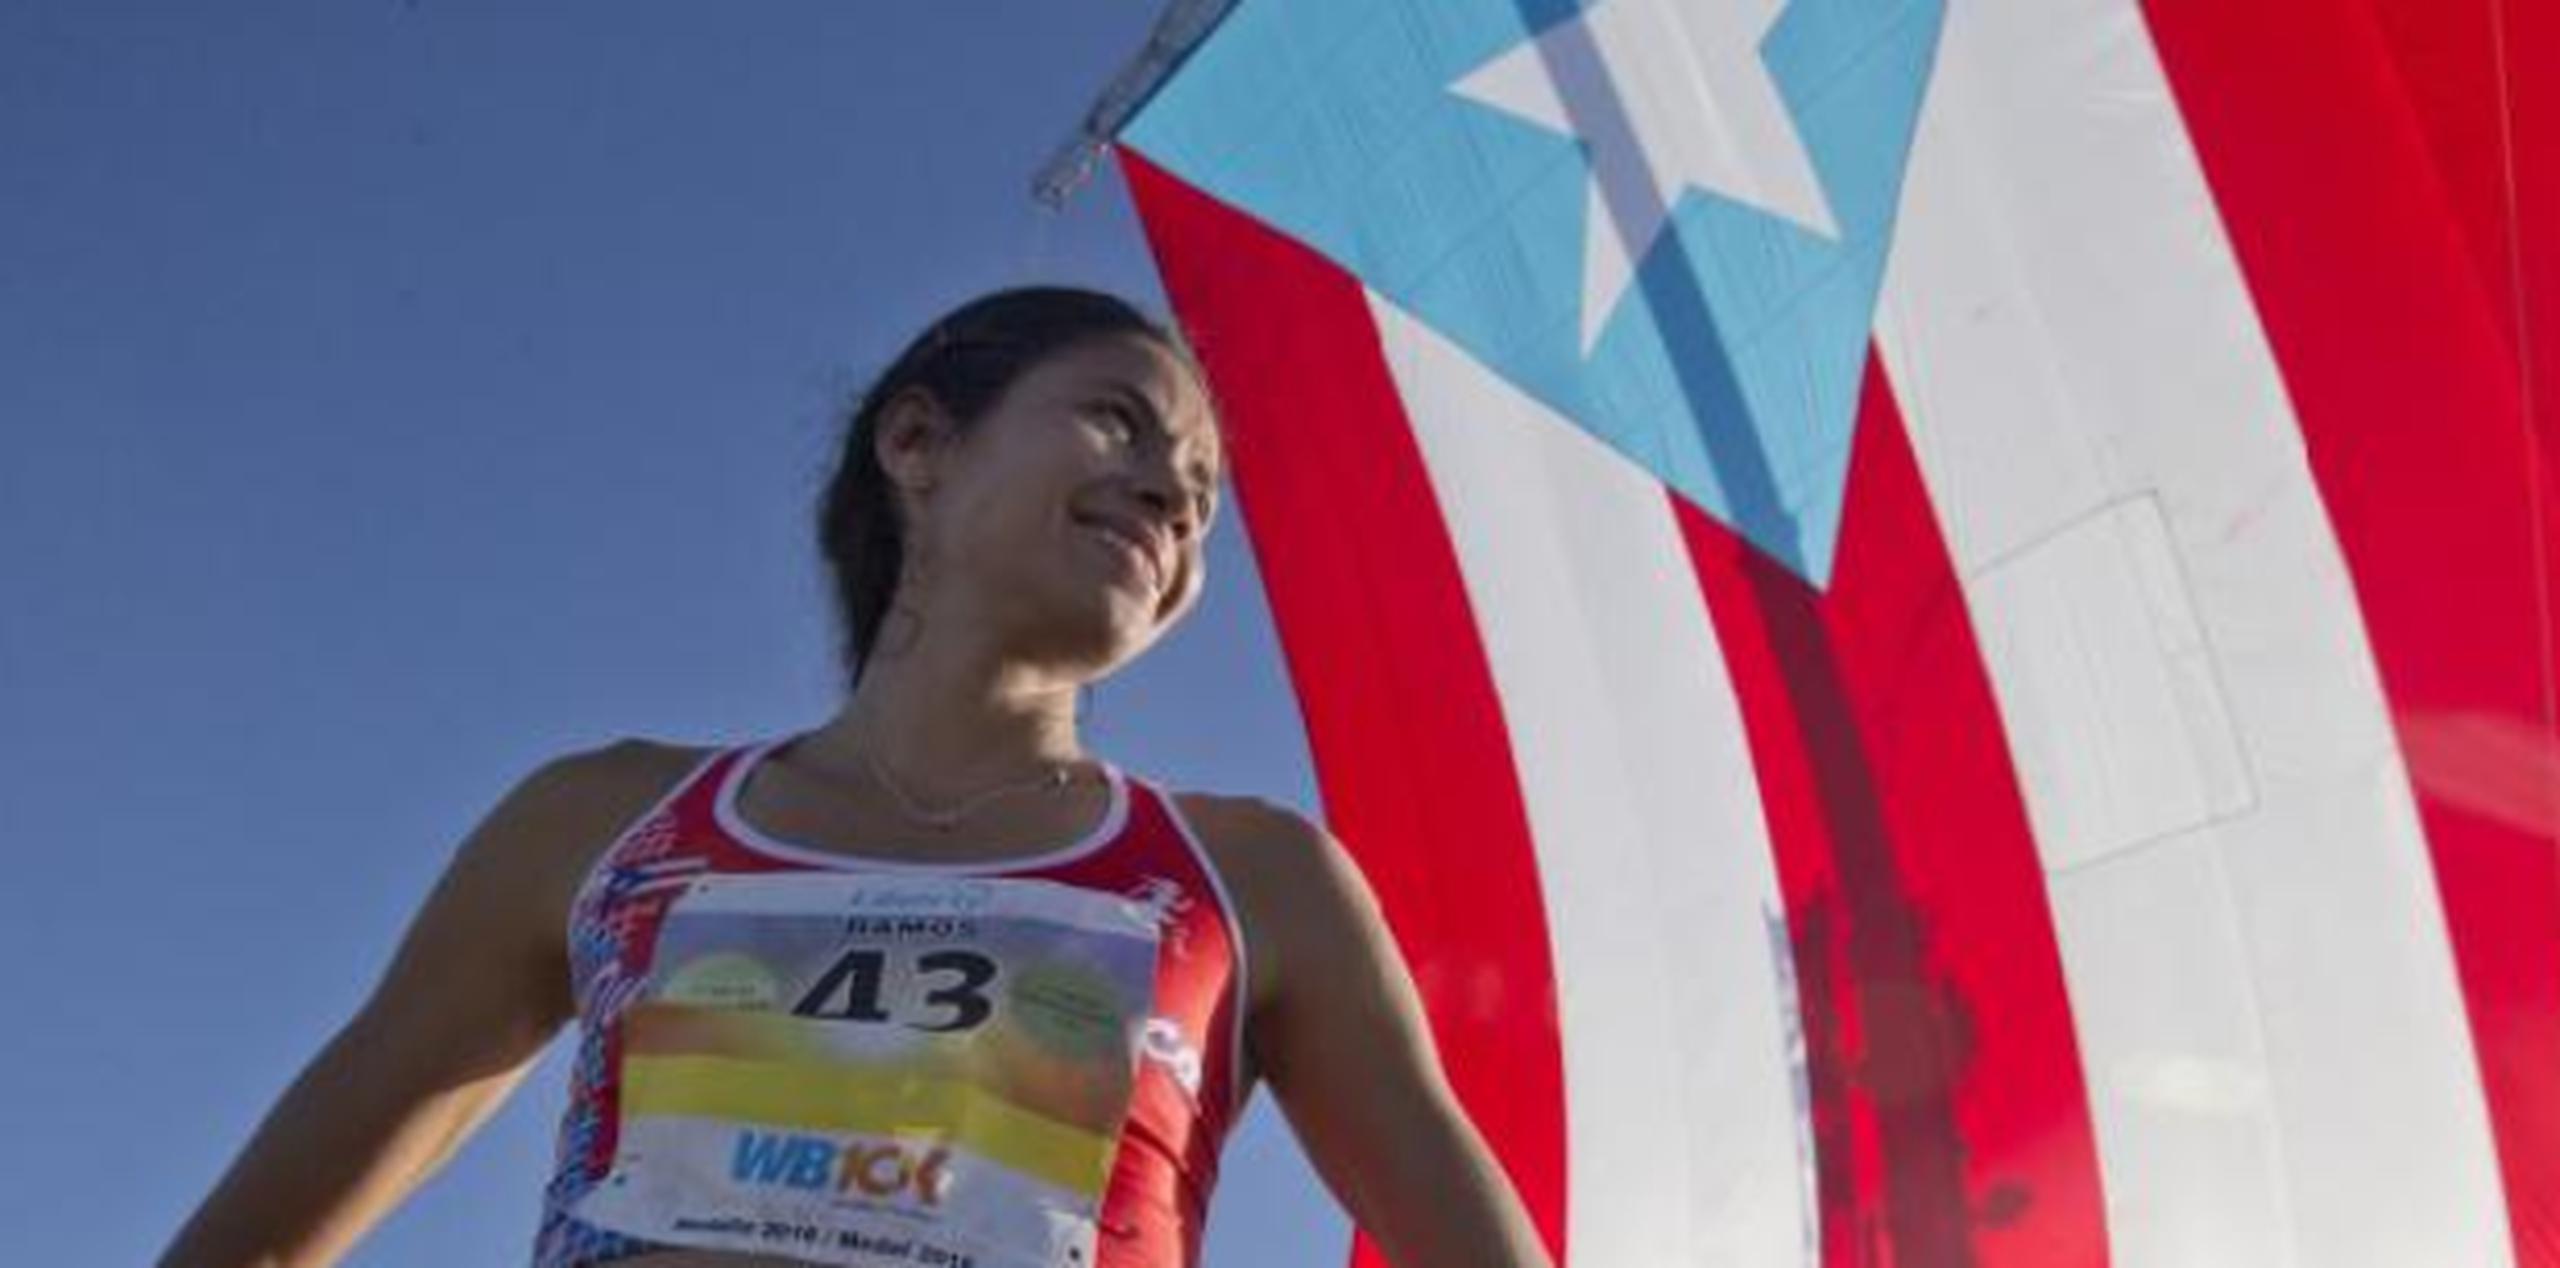 “Vino mucha gente con sus banderas y las agitaban a mi paso”, declaró Ramos sobre su participación en la edición 2017 del maratón de Nueva York. (Archivo)